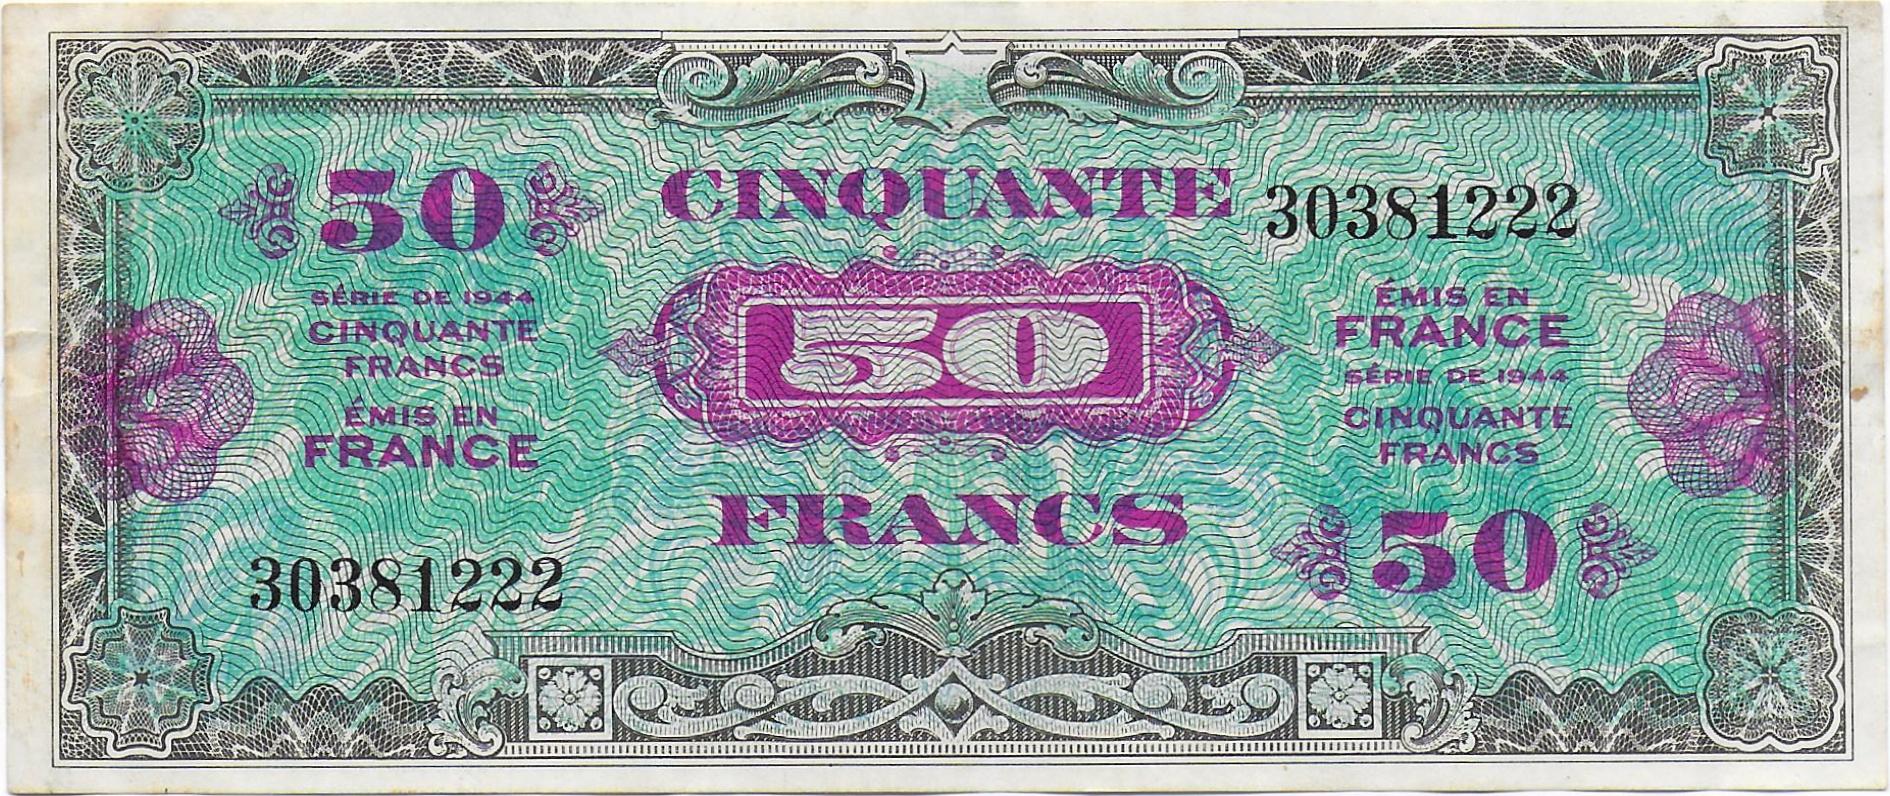 France 50 francs WWII front.jpg